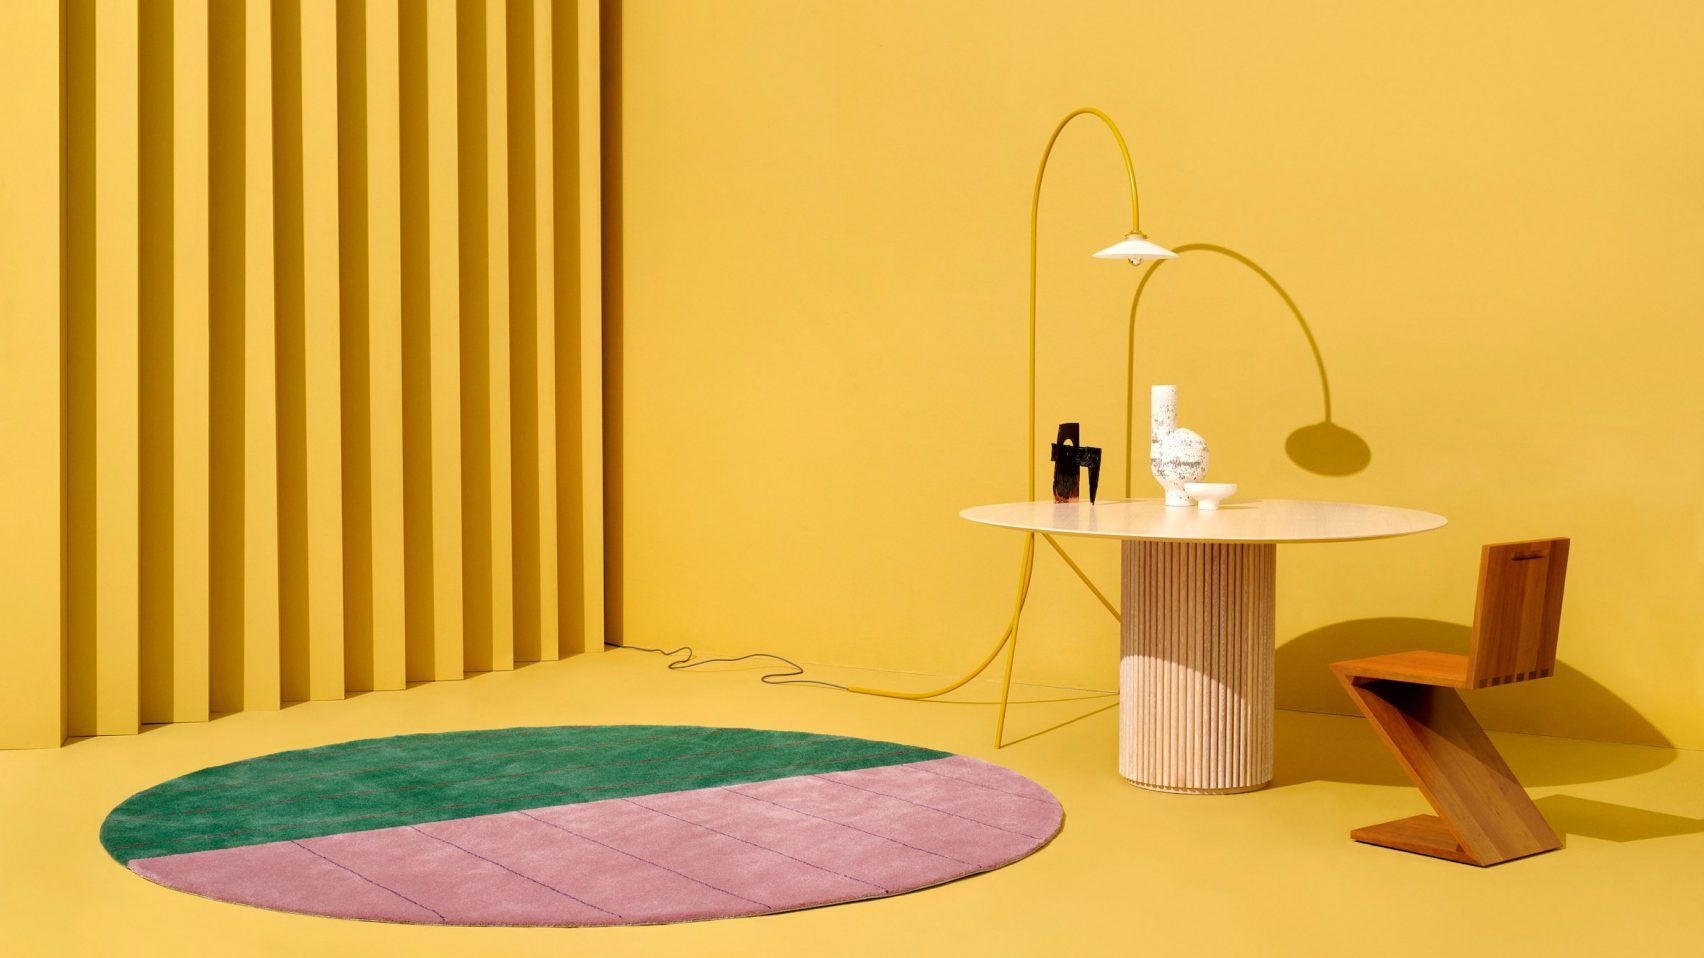 Bentuk dan warna karpet dapat mendukung konsep desain ruang. 